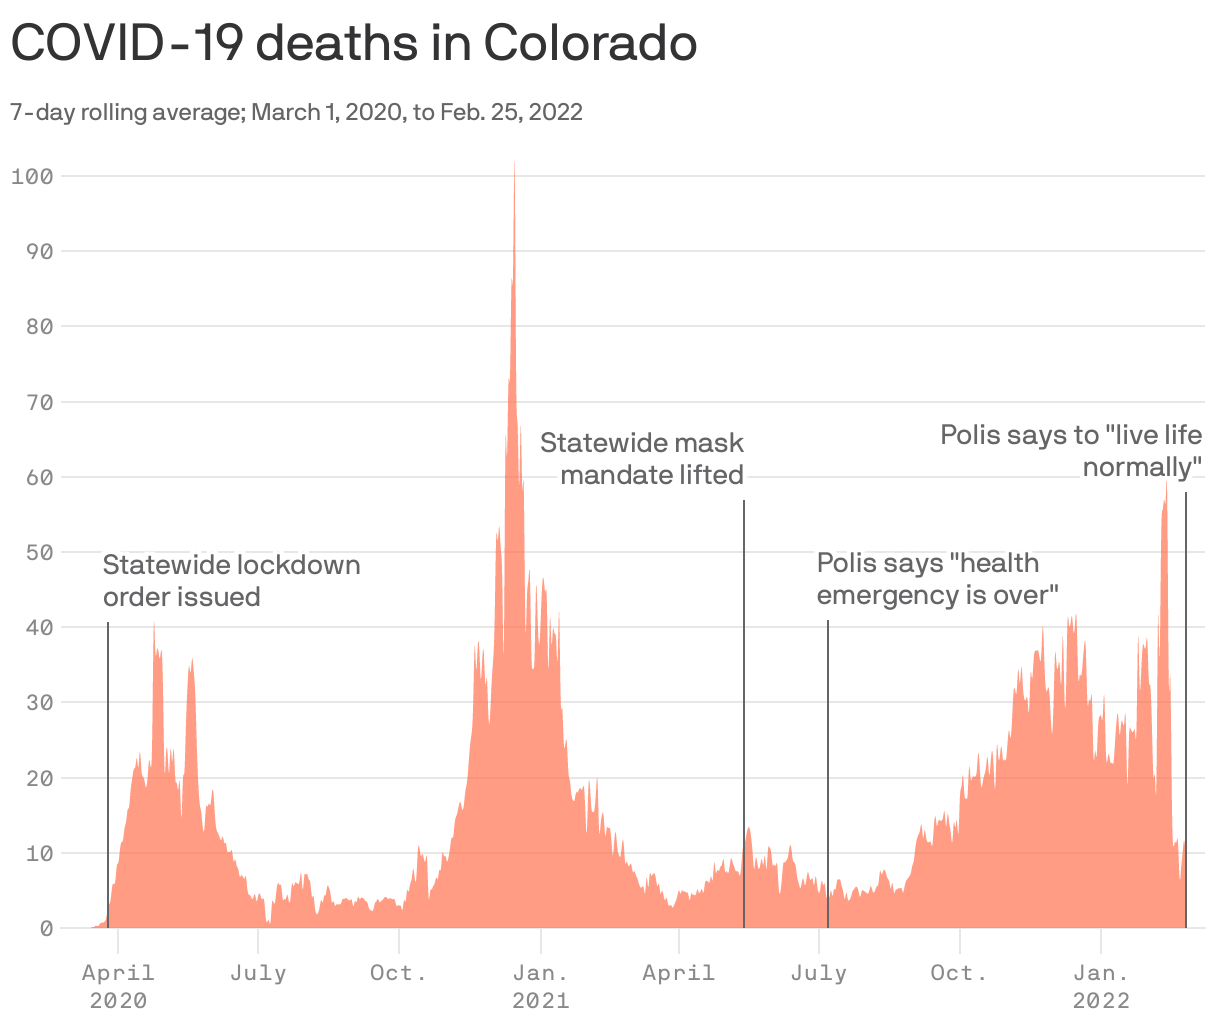 COVID-19 deaths in Colorado